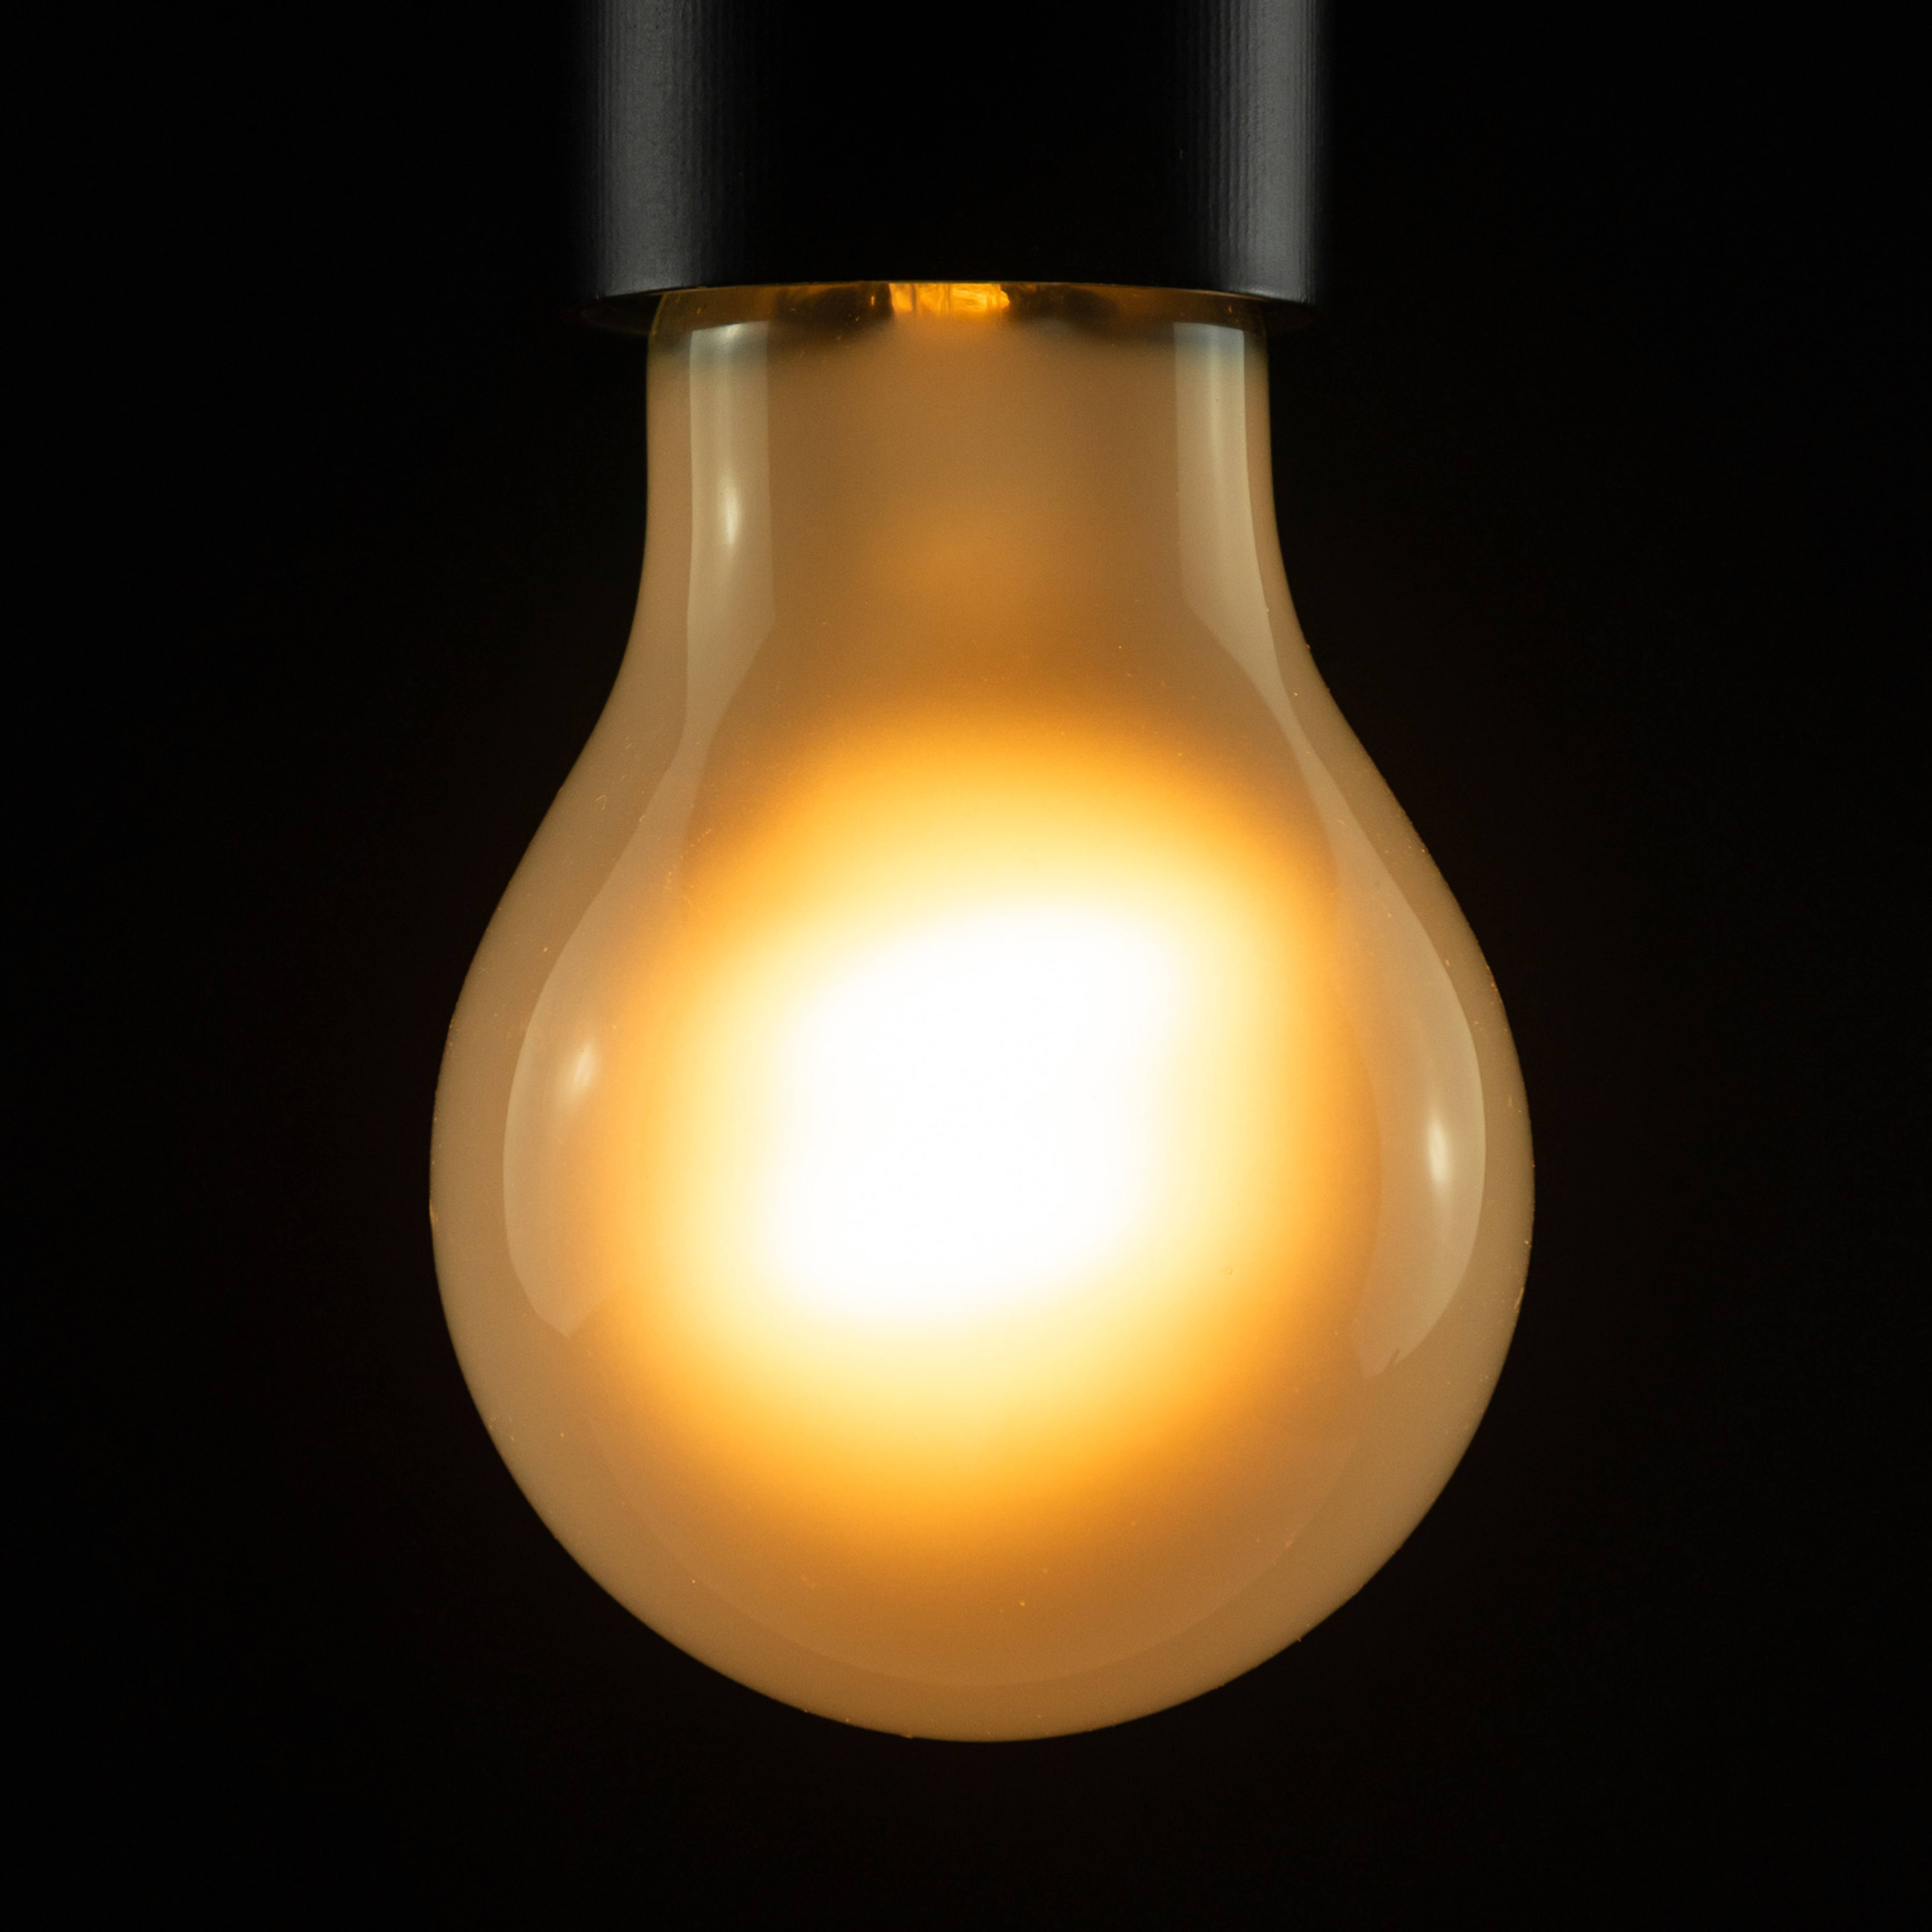 SEGULA LED-Lampe E27 3.2W 2.200K dimmbar matt